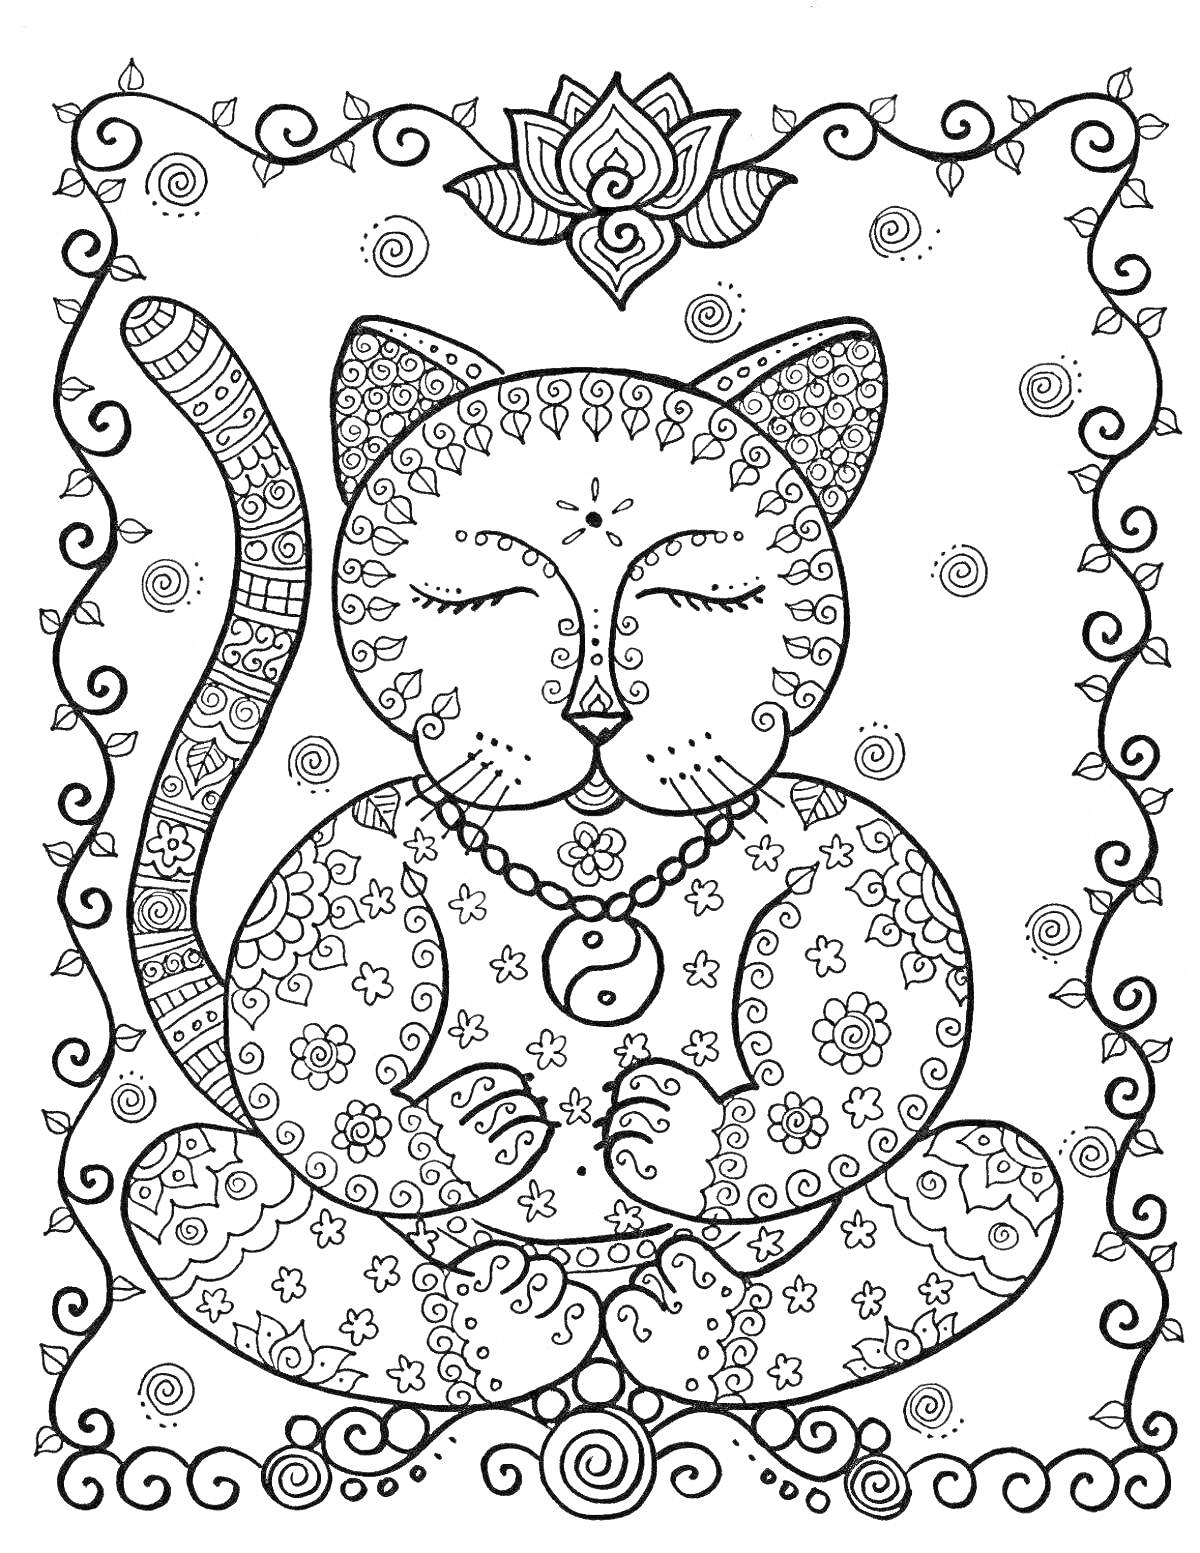 Раскраска Мандала кошка с цветами, сердечками и узорами в рамке с завитками и цветком вверху